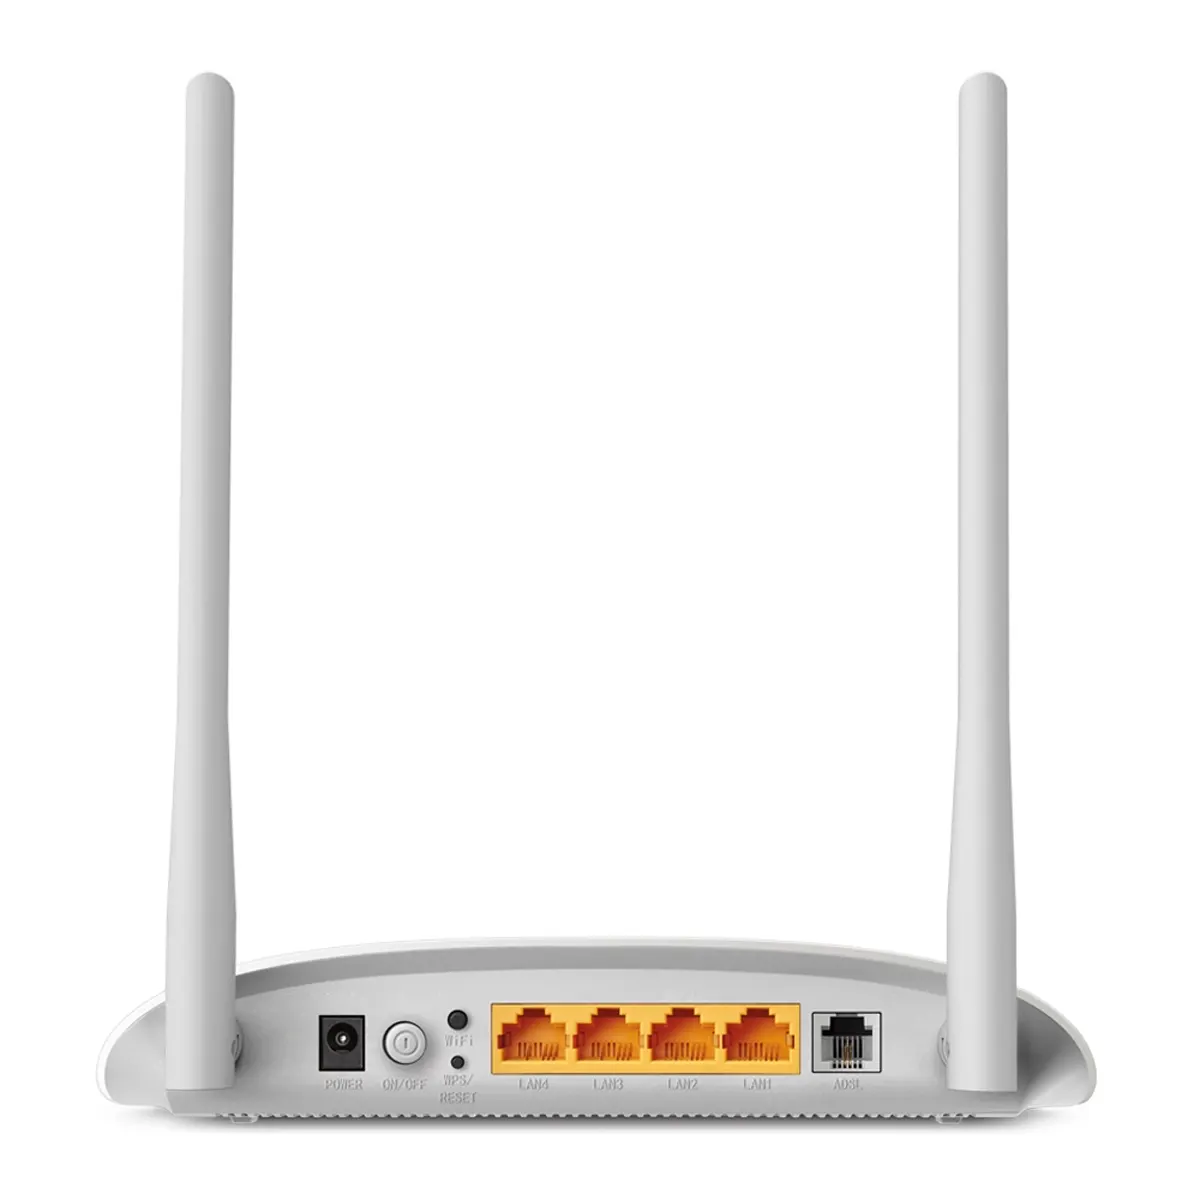 مودم - روتر تی پی لینک TP-LINK TD-W8961N V4 Wireless ADSL2 Modem Router